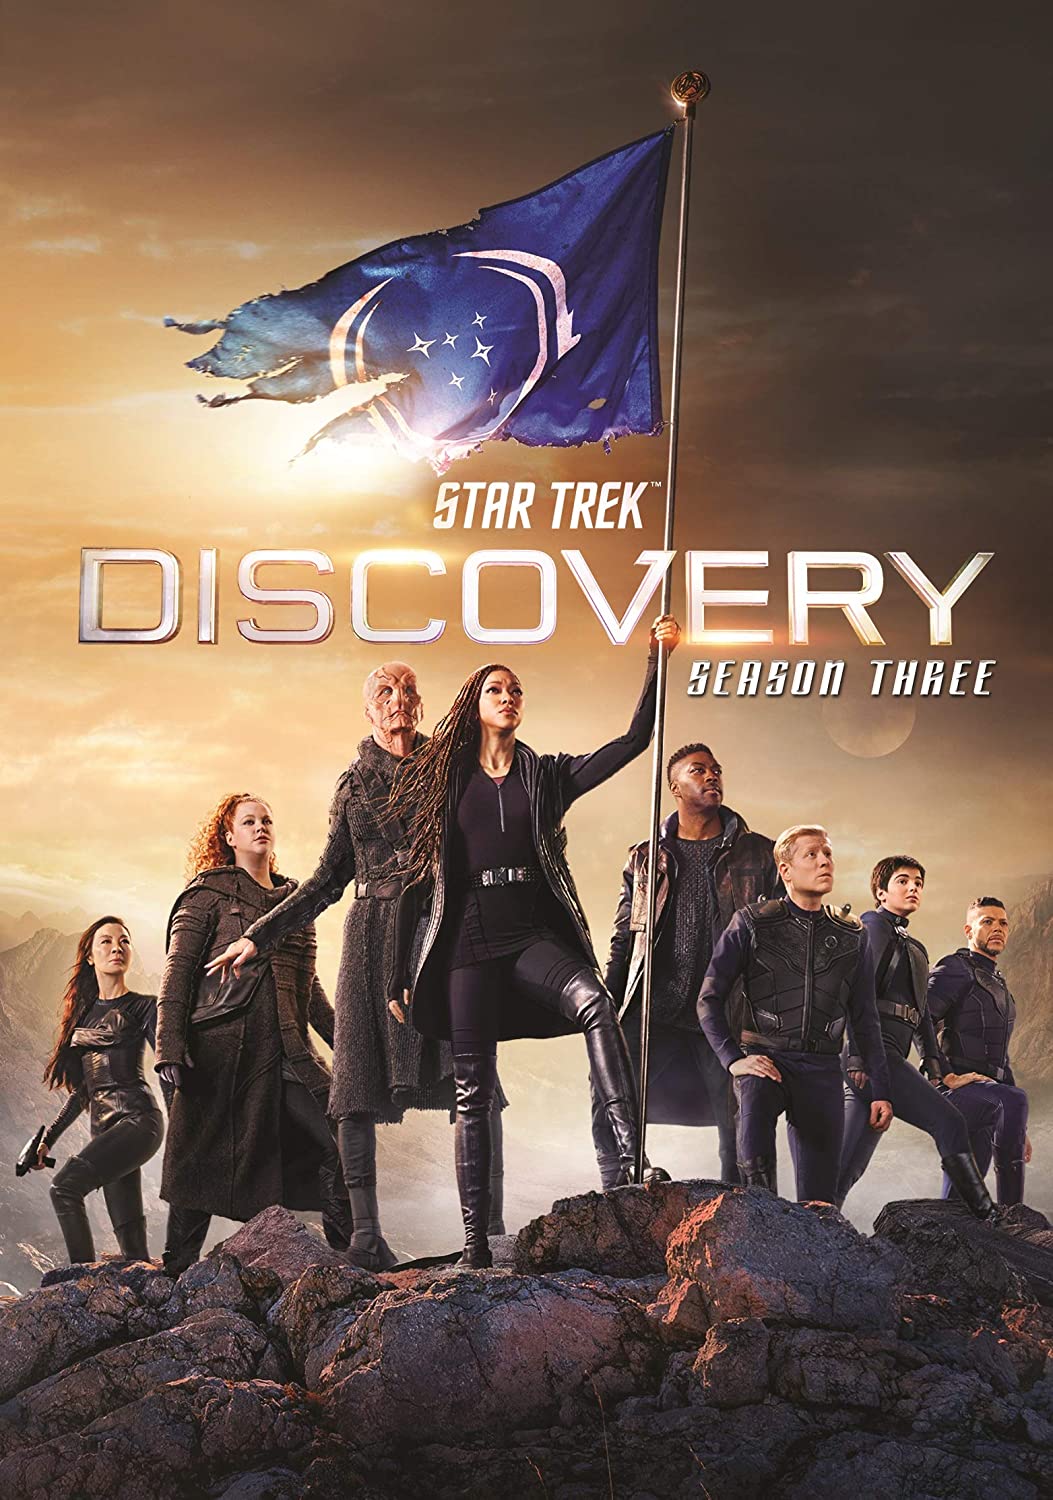 ดูหนังออนไลน์ฟรี Star Trek Discovery Season 3 EP8 สตาร์ เทรค ดิสคัฟเวอรี่ ซีซั่นที่ 3 ตอนที่ 8